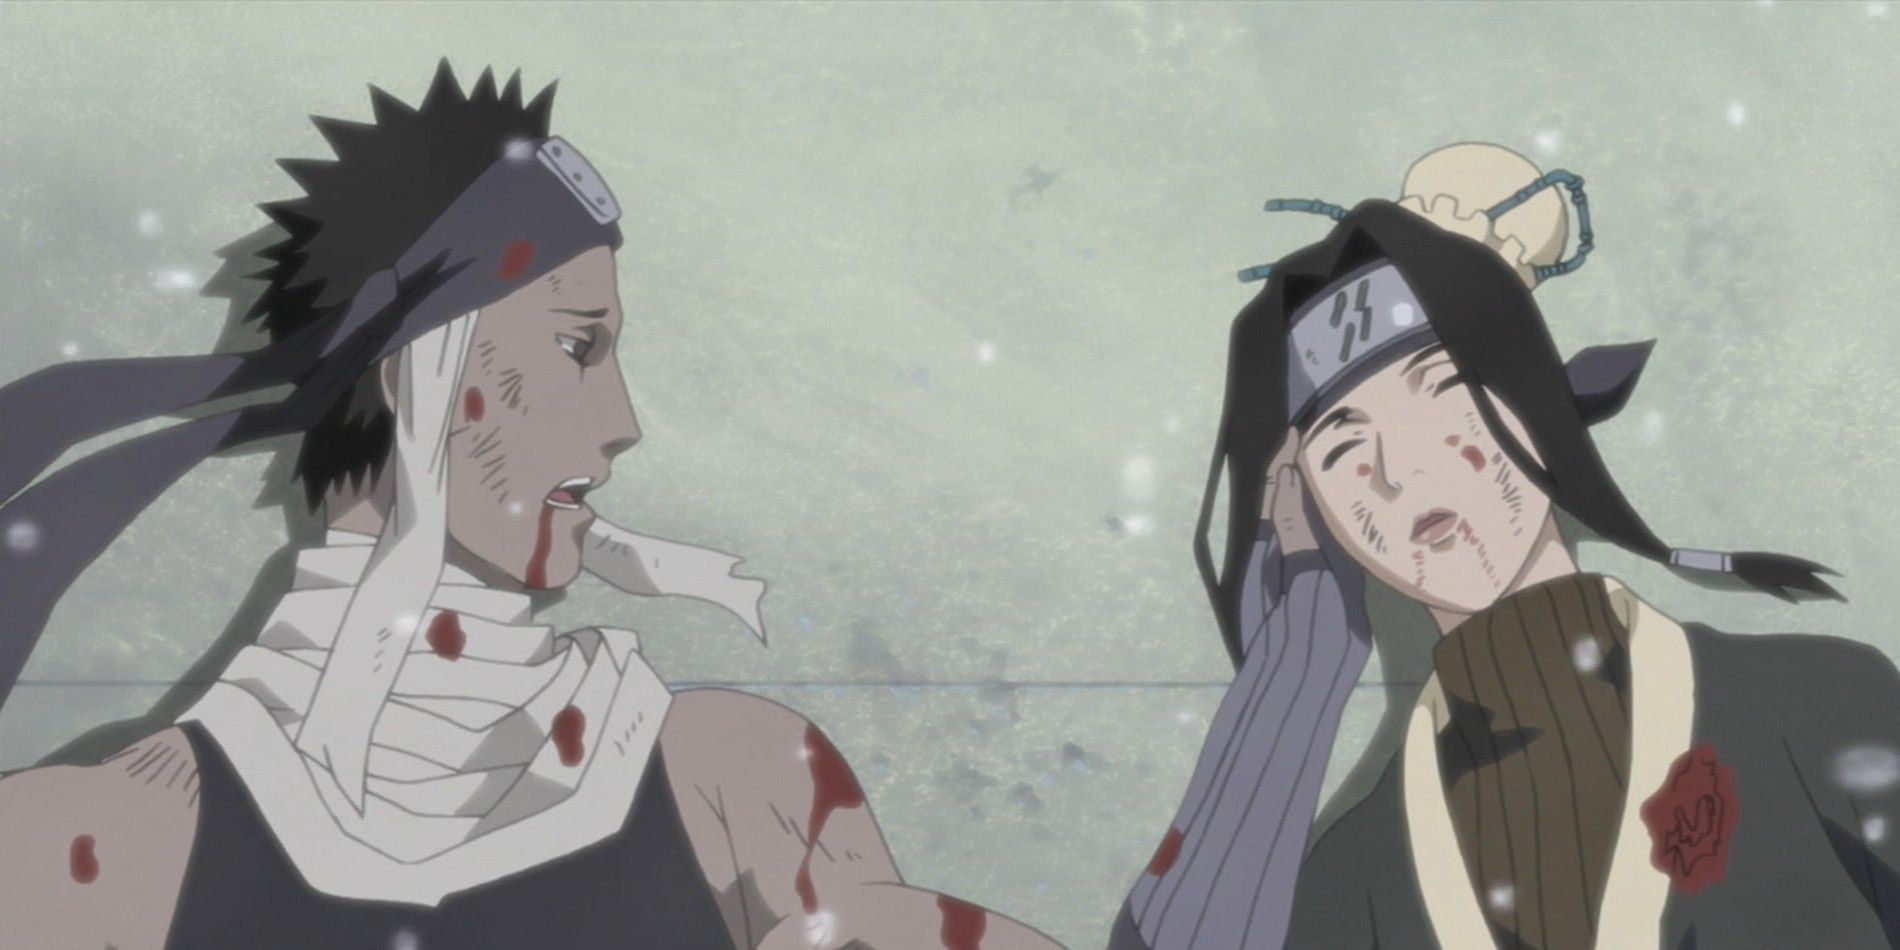 Zabuza and Haku in Naruto